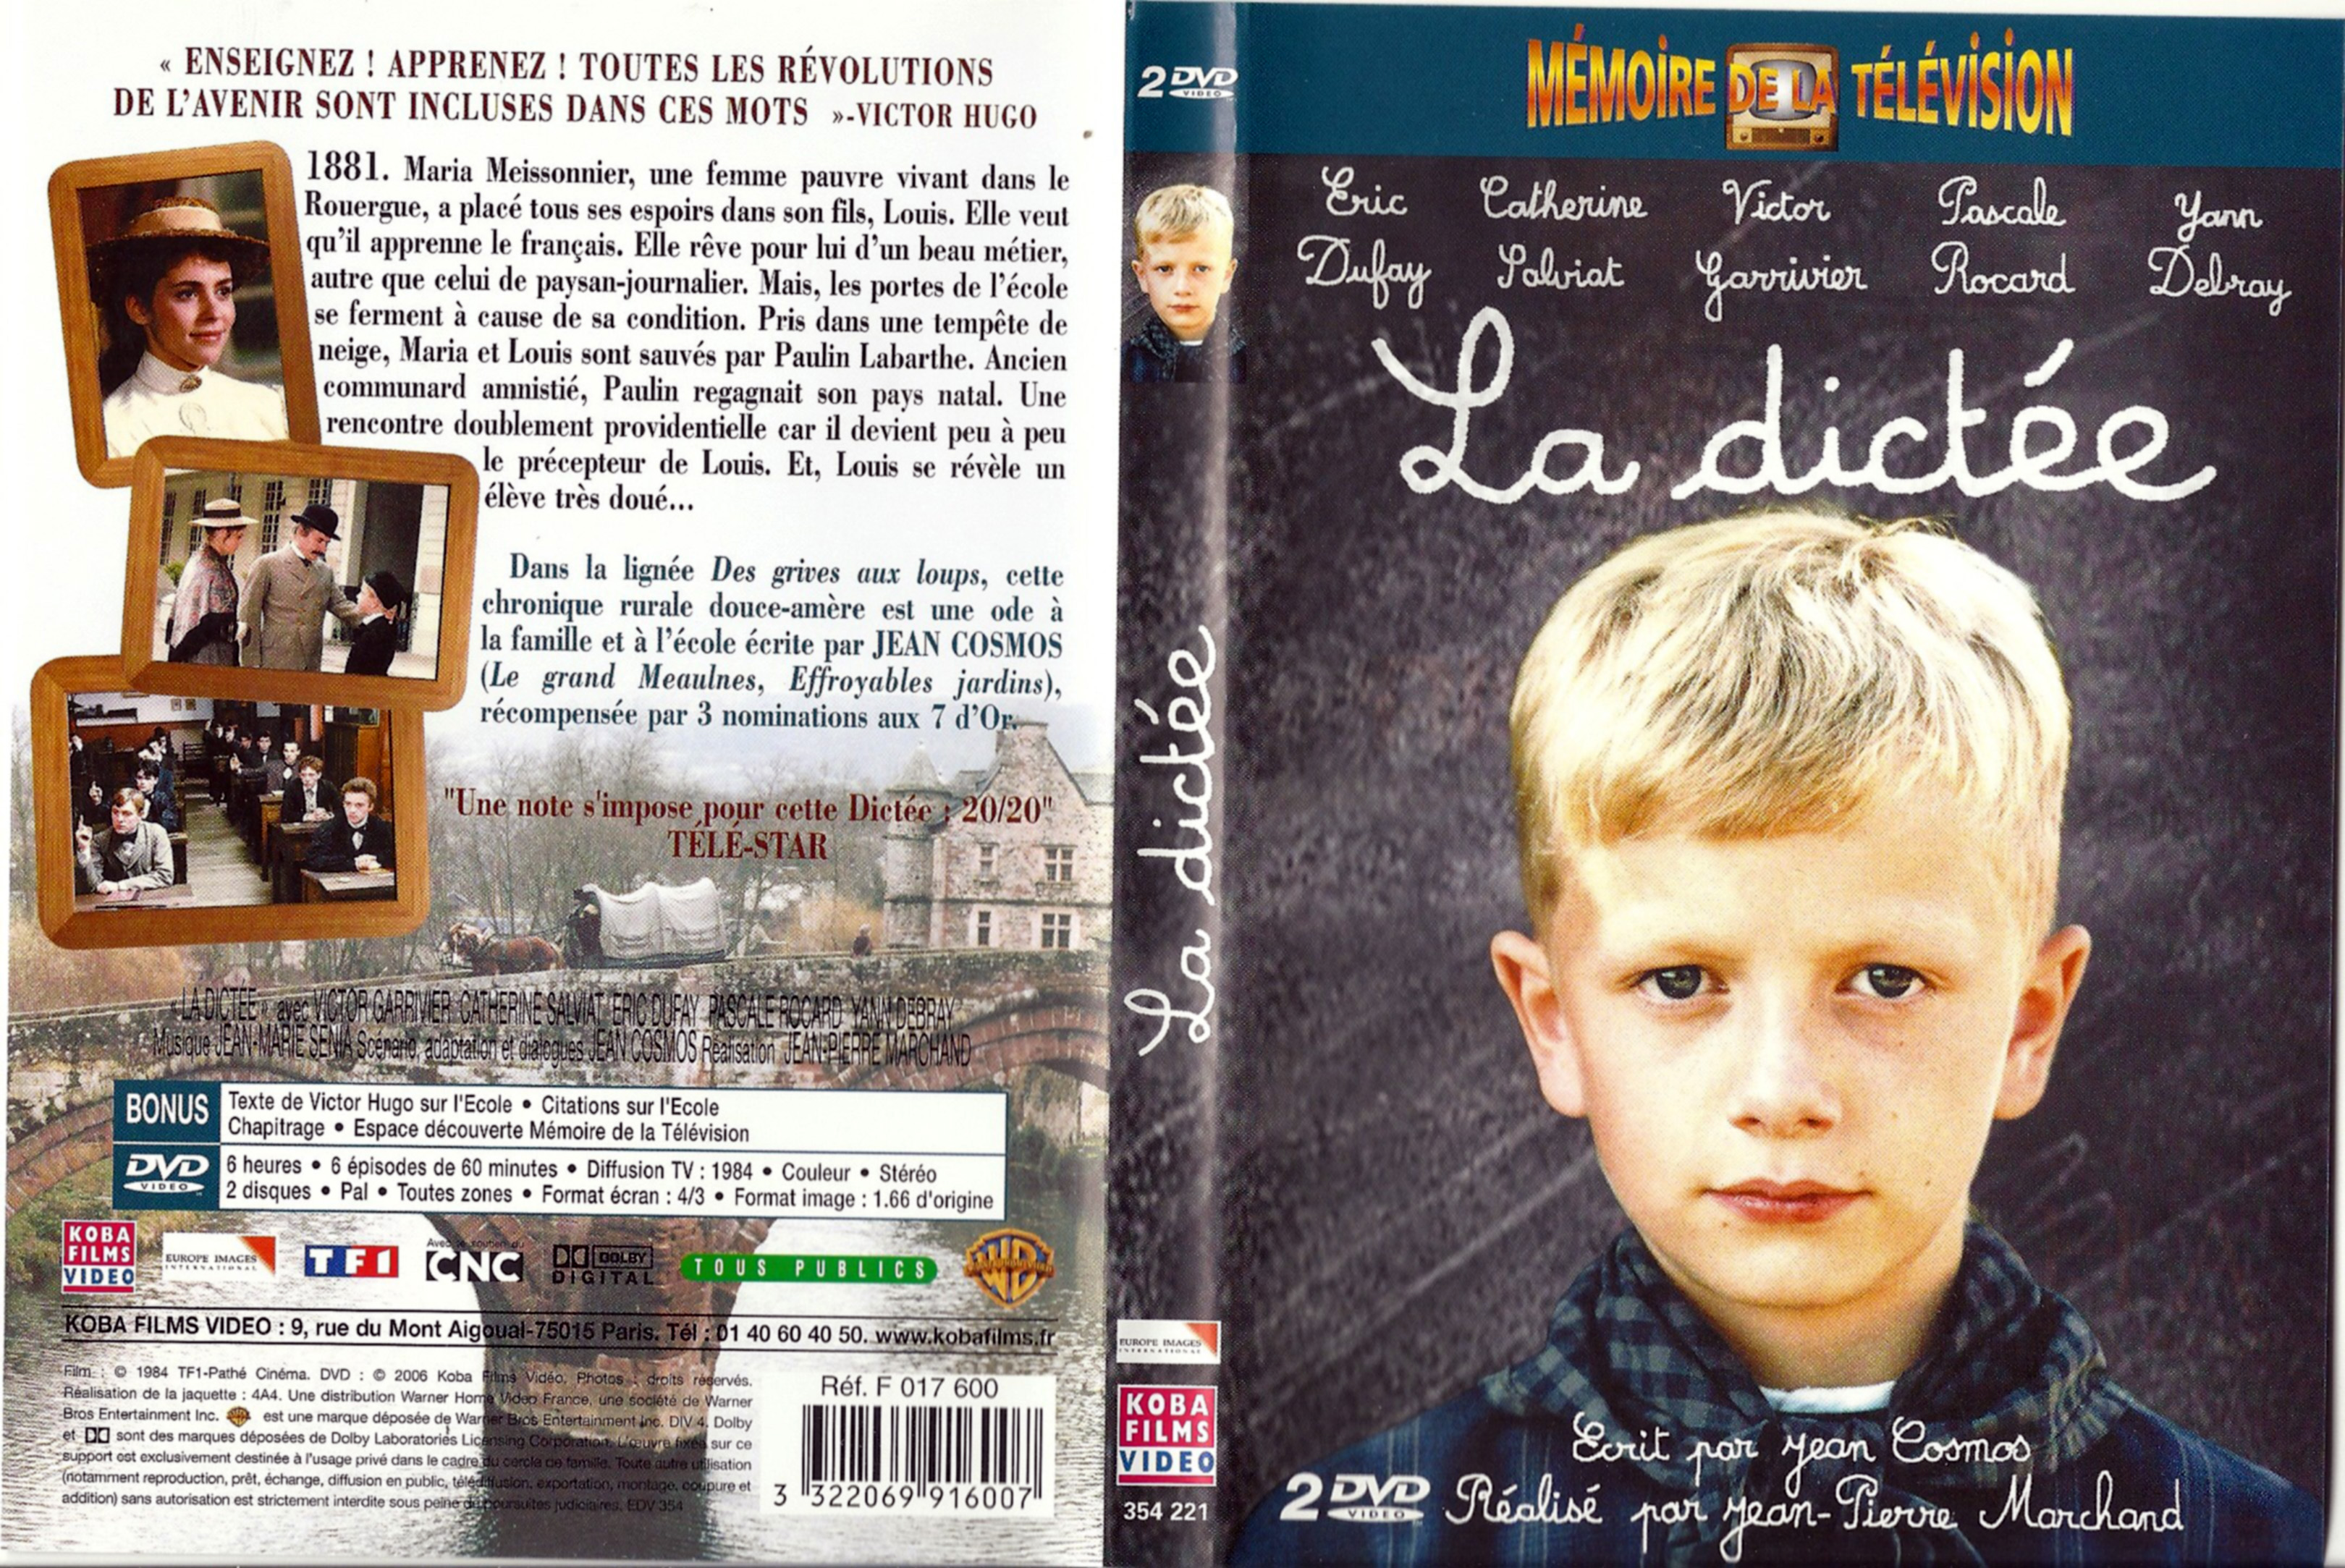 Jaquette DVD La dicte